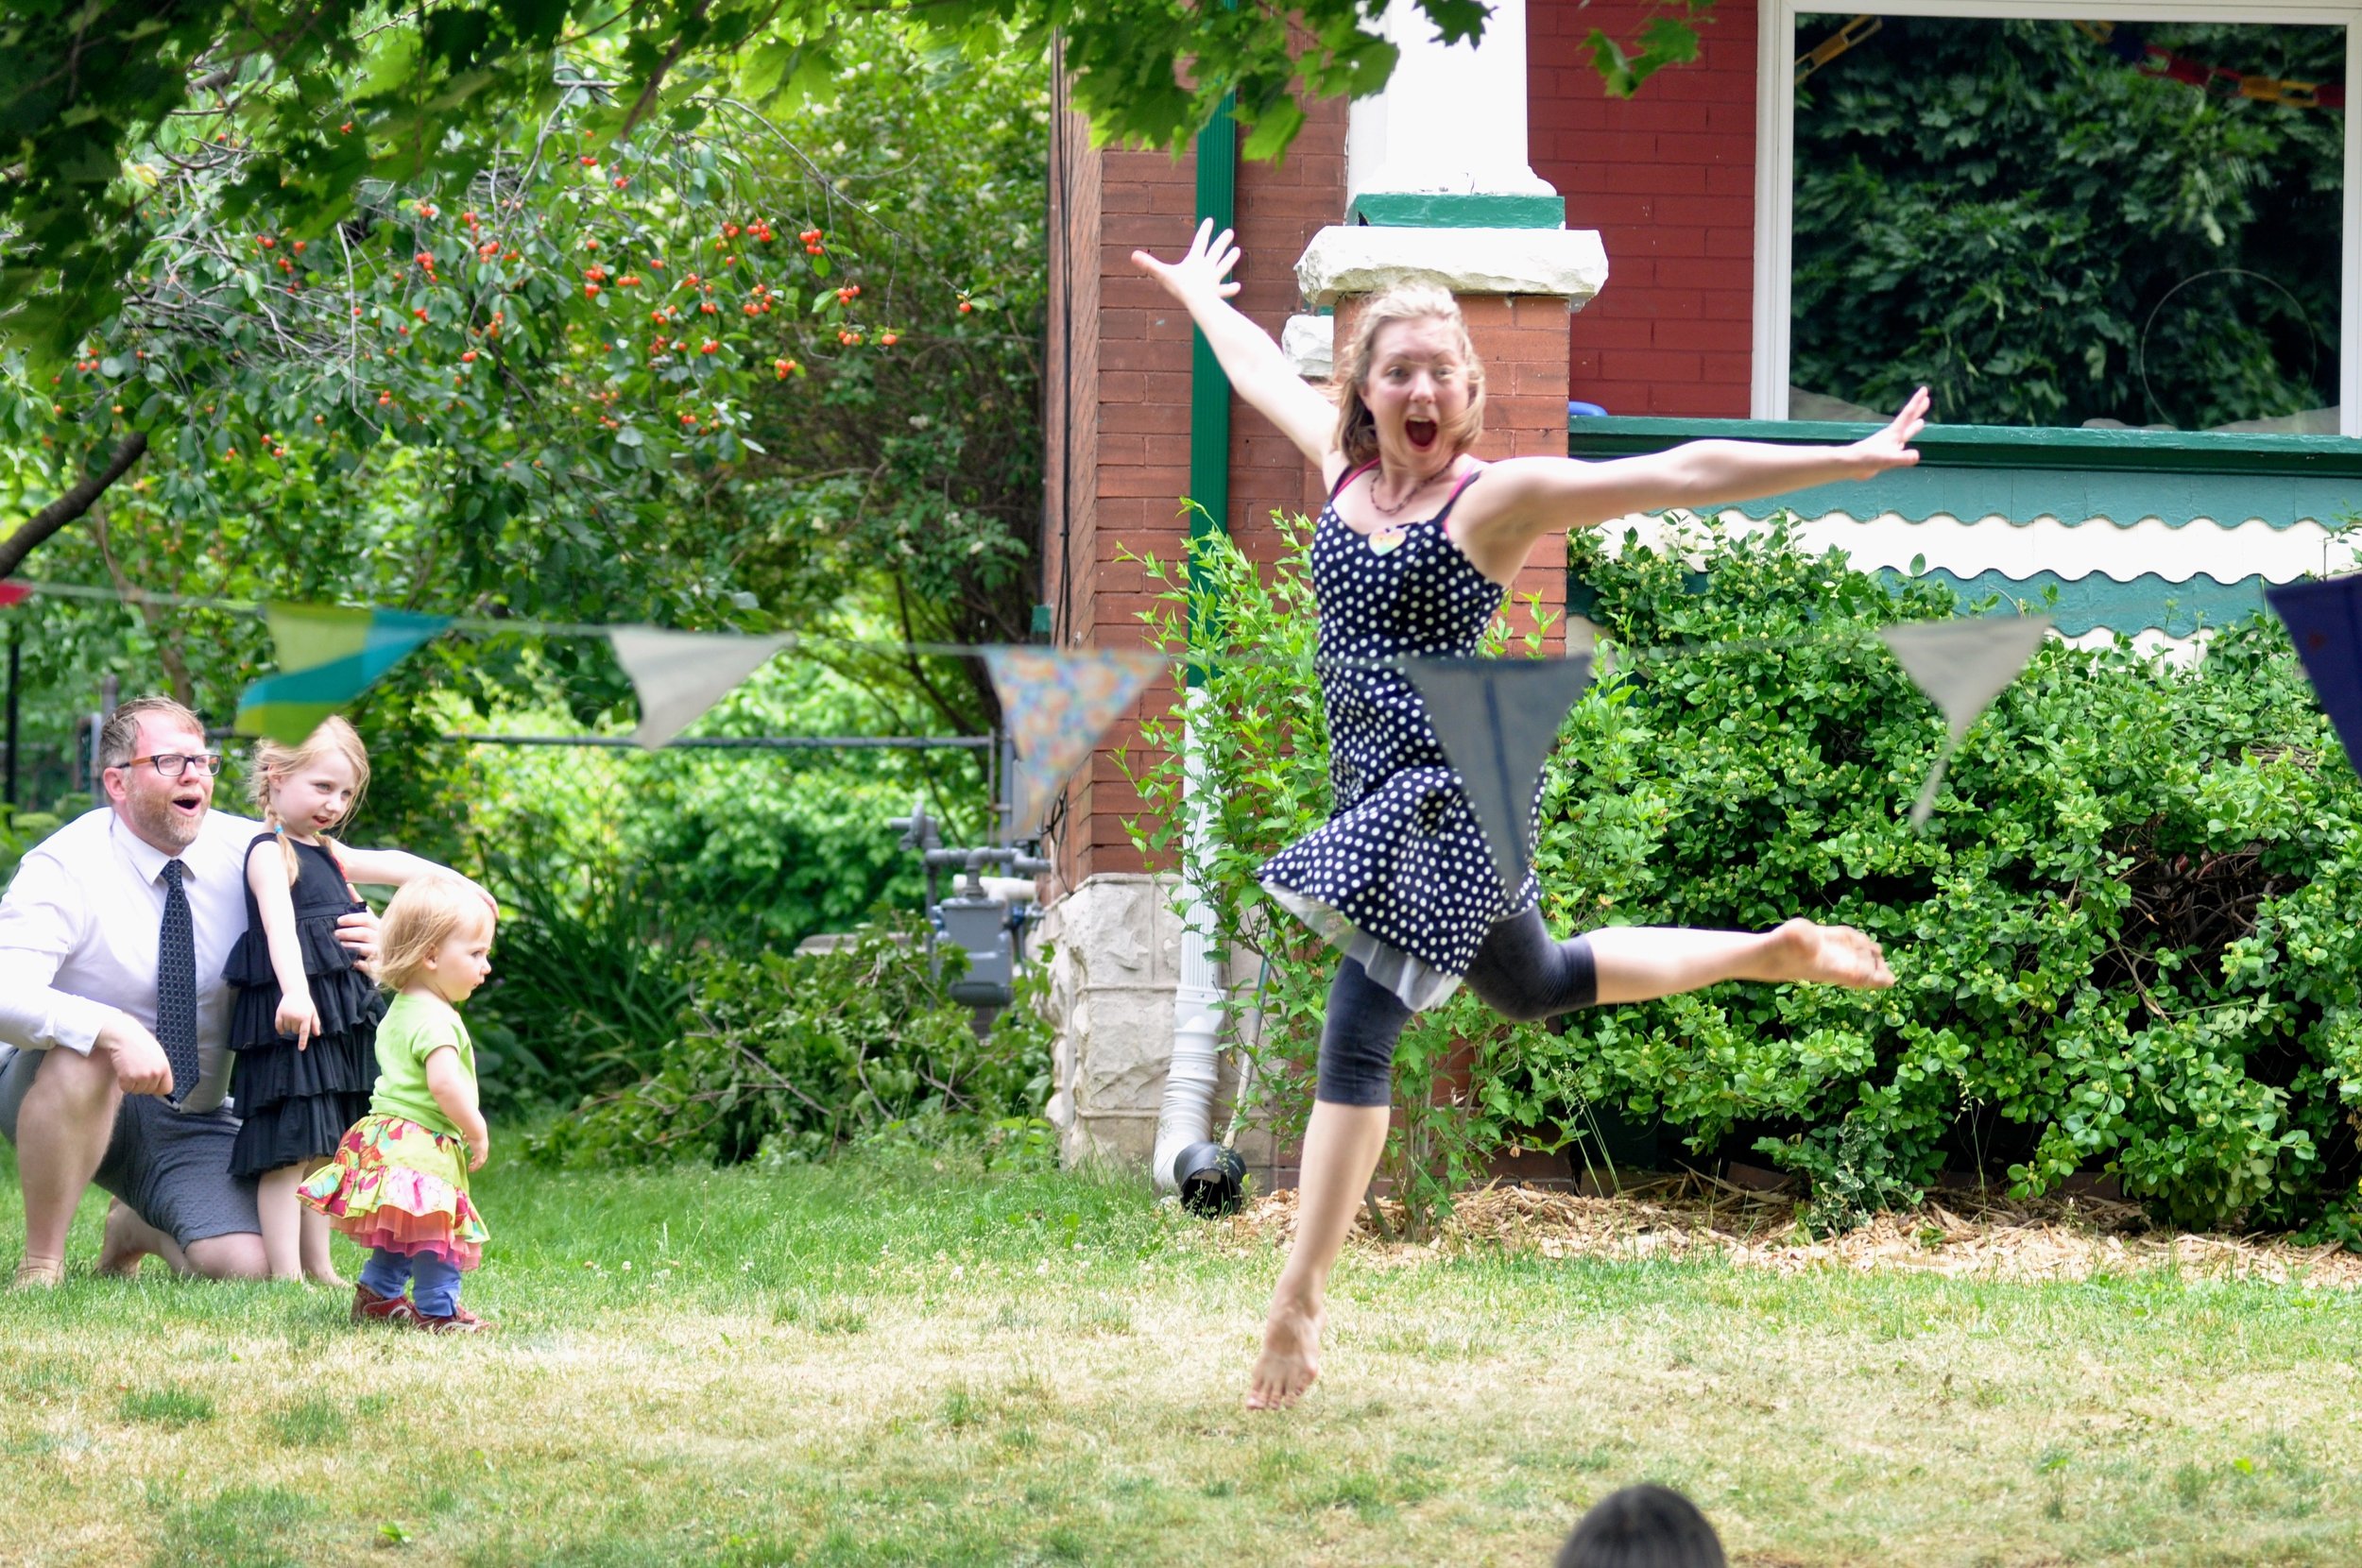 A community participant dances on a front lawn.